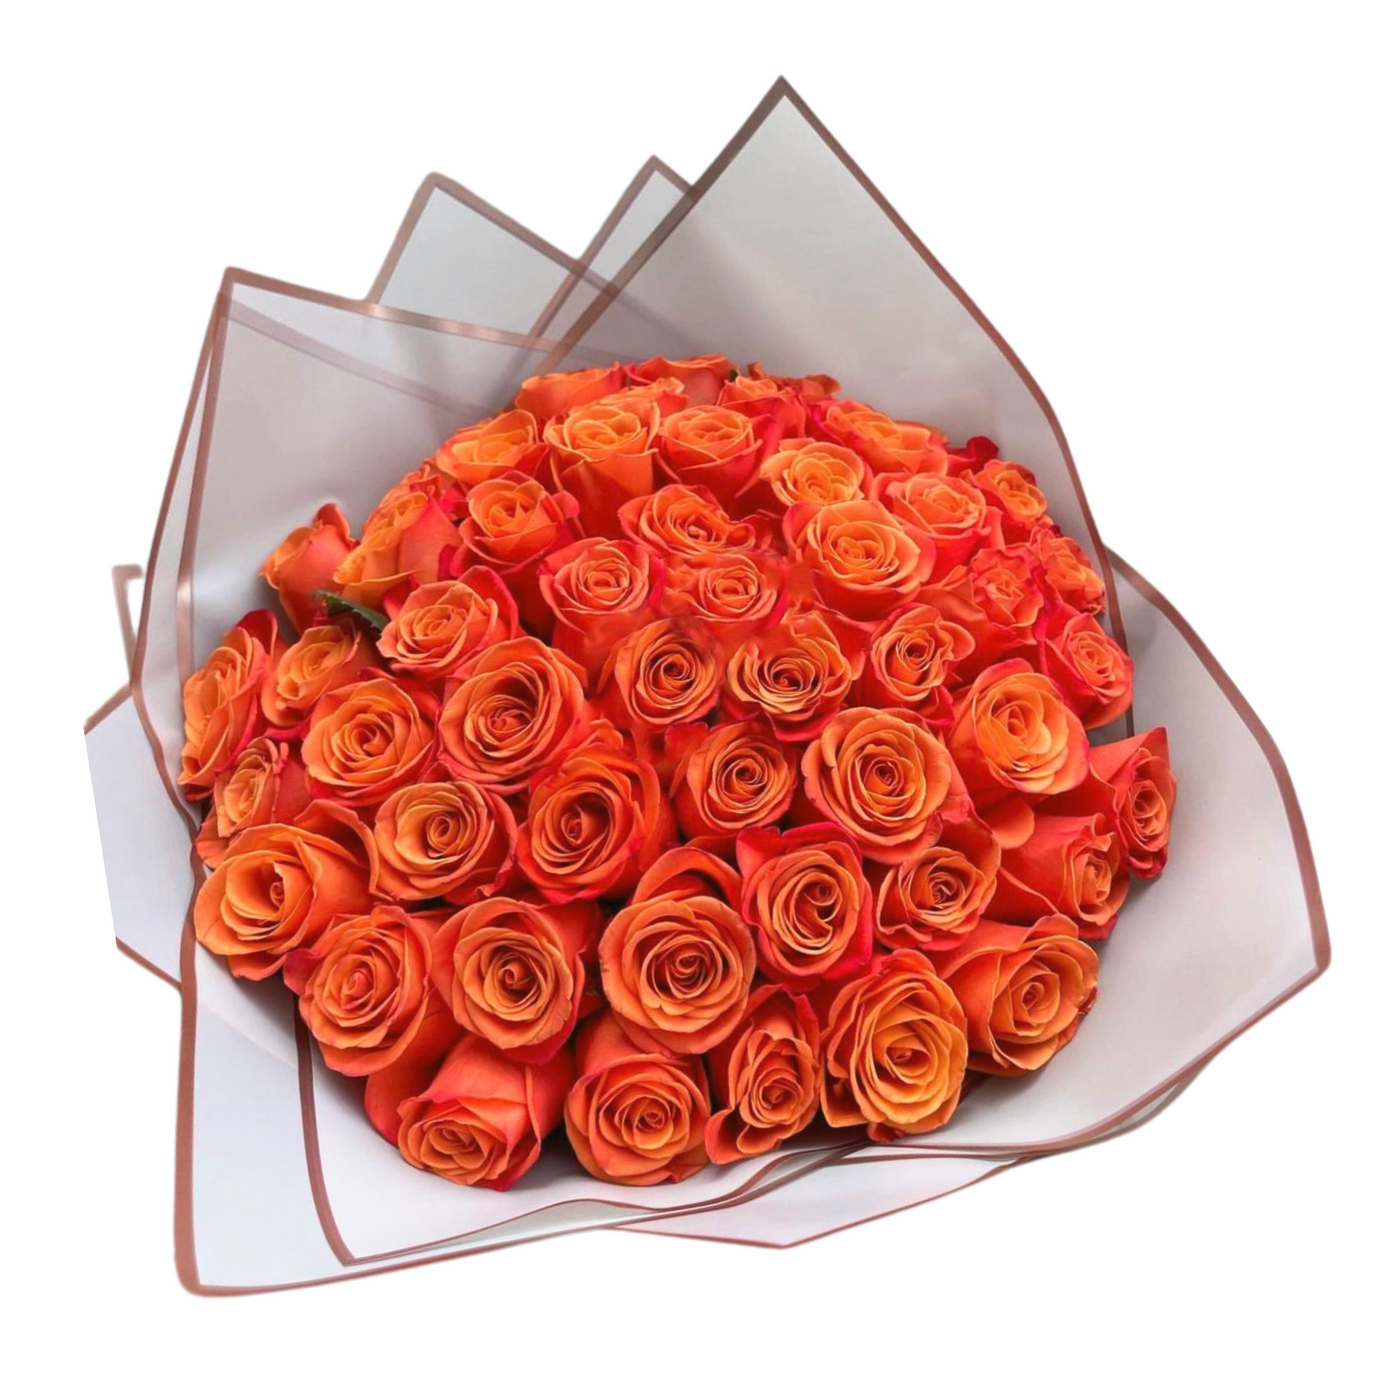 50 Bright Orange Roses Bouquet